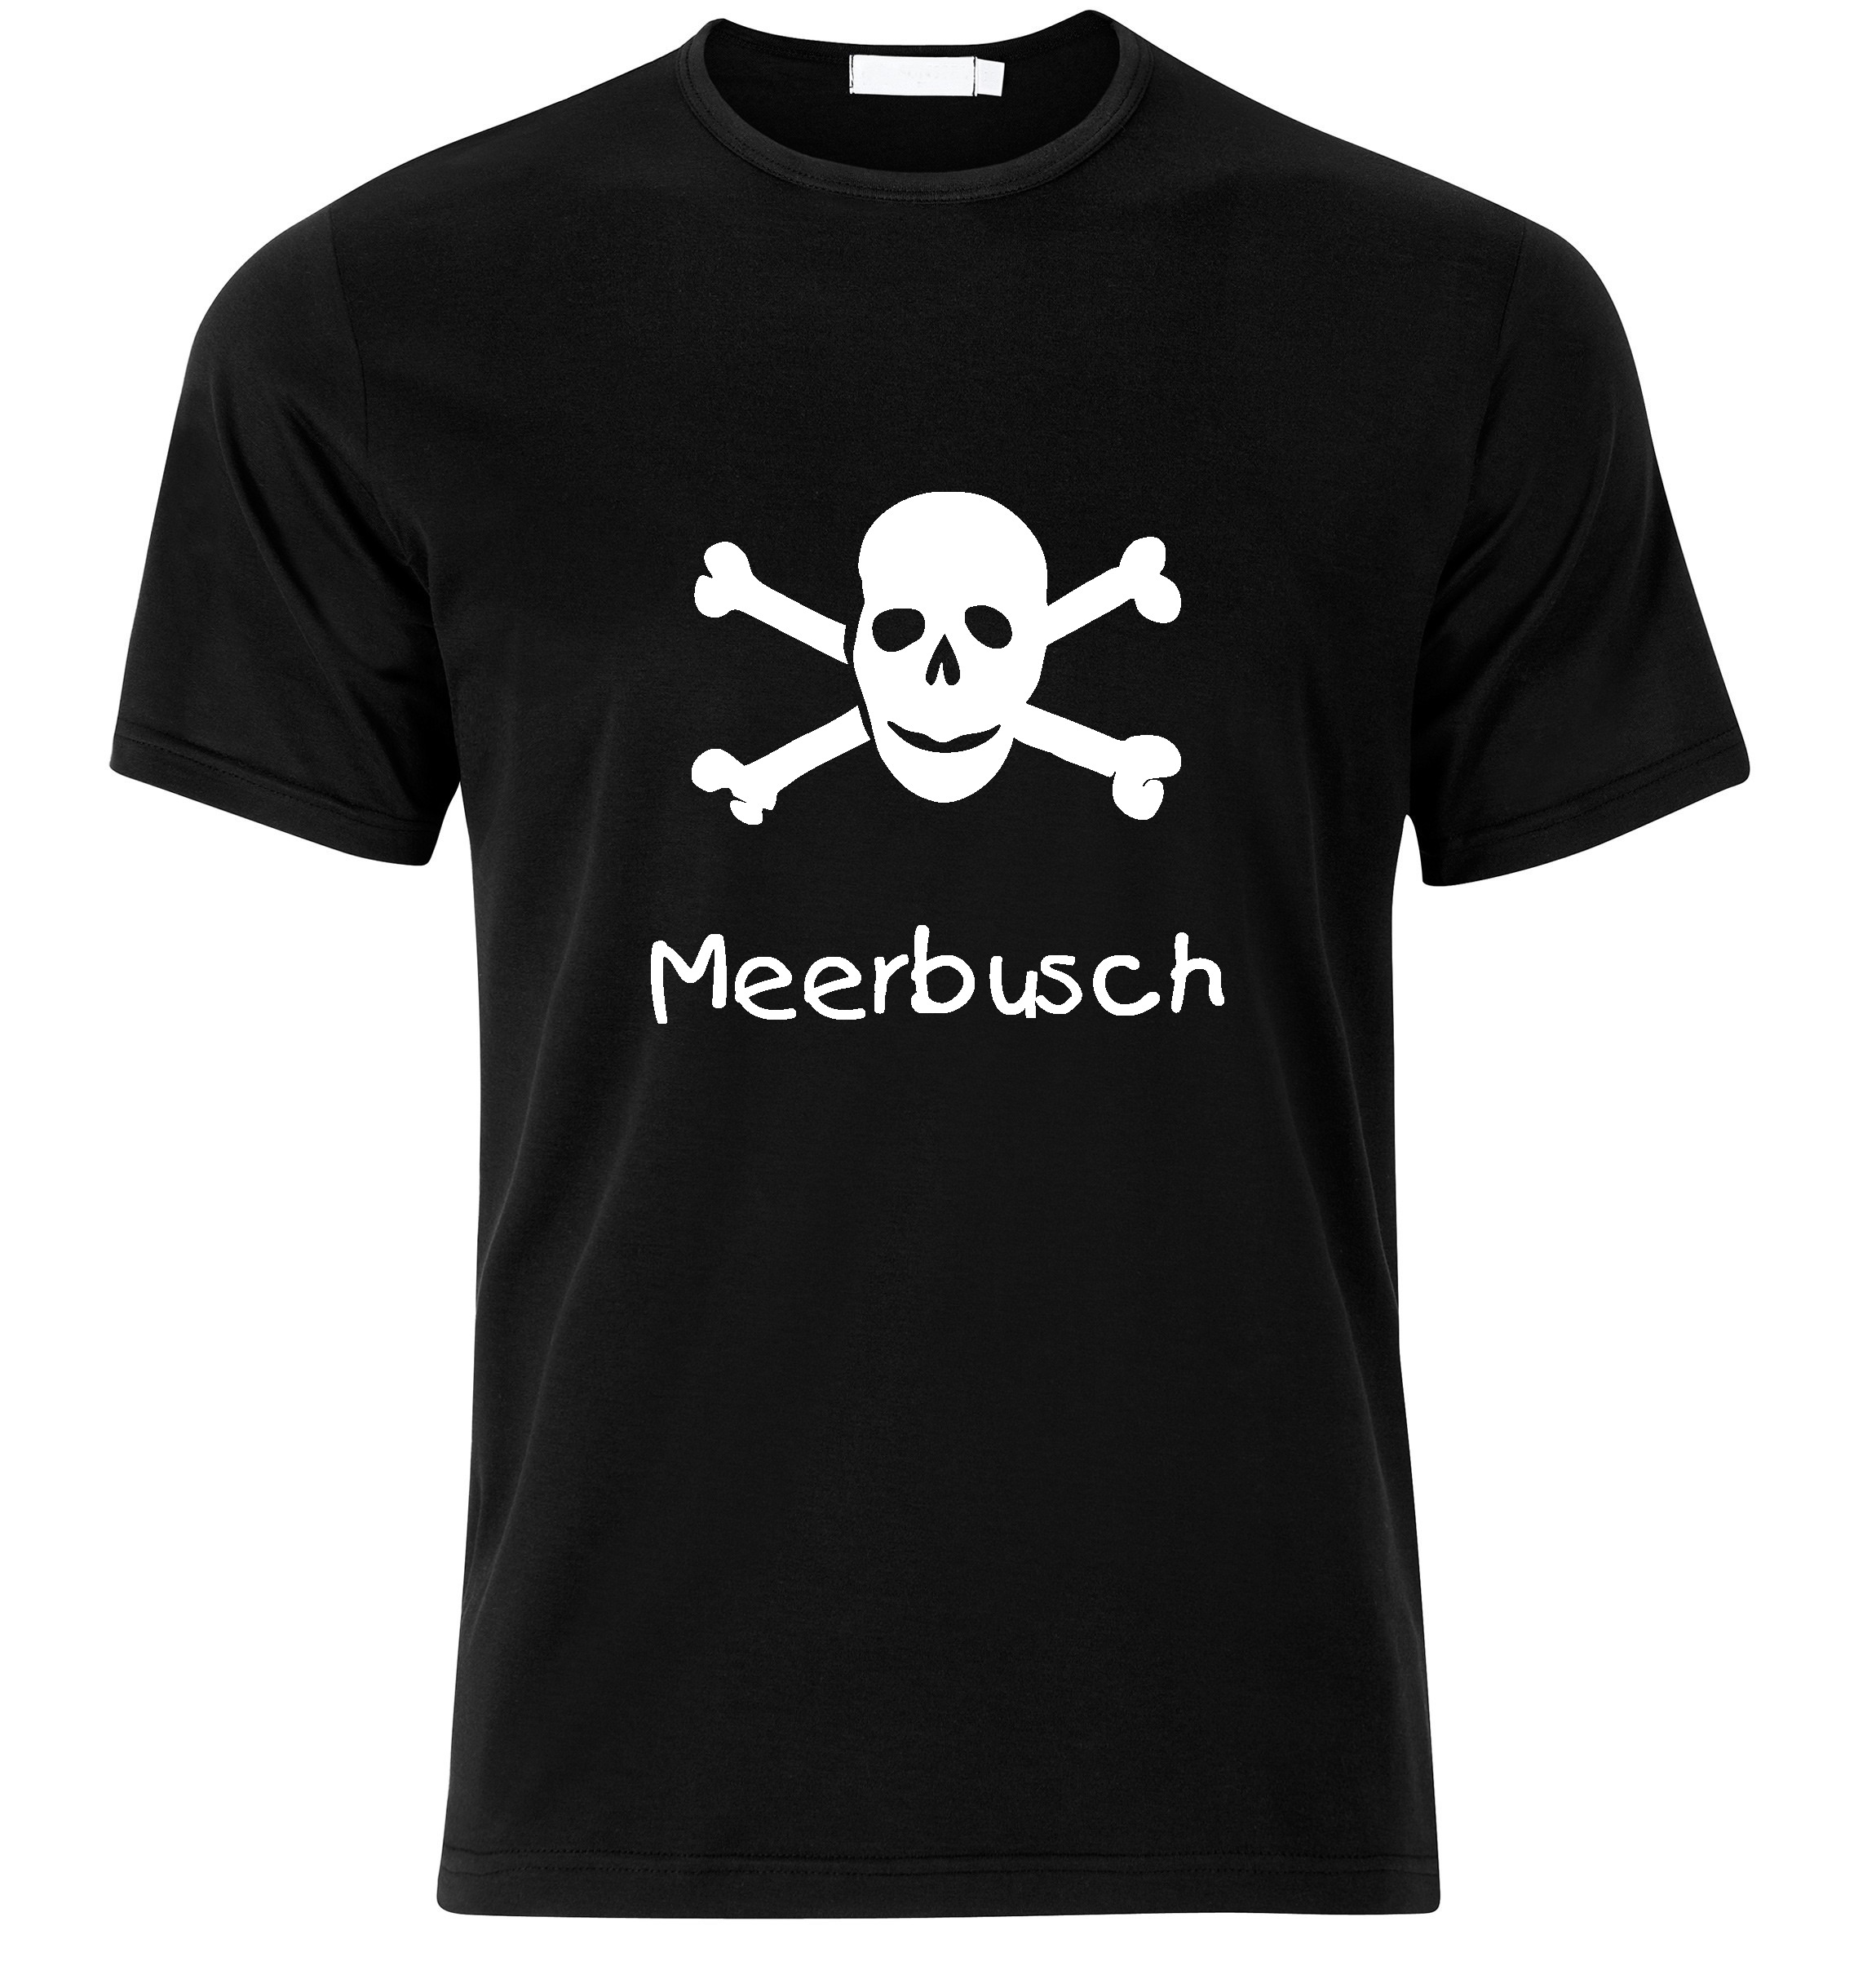 T-Shirt Meerbusch Jolly Roger, Totenkopf